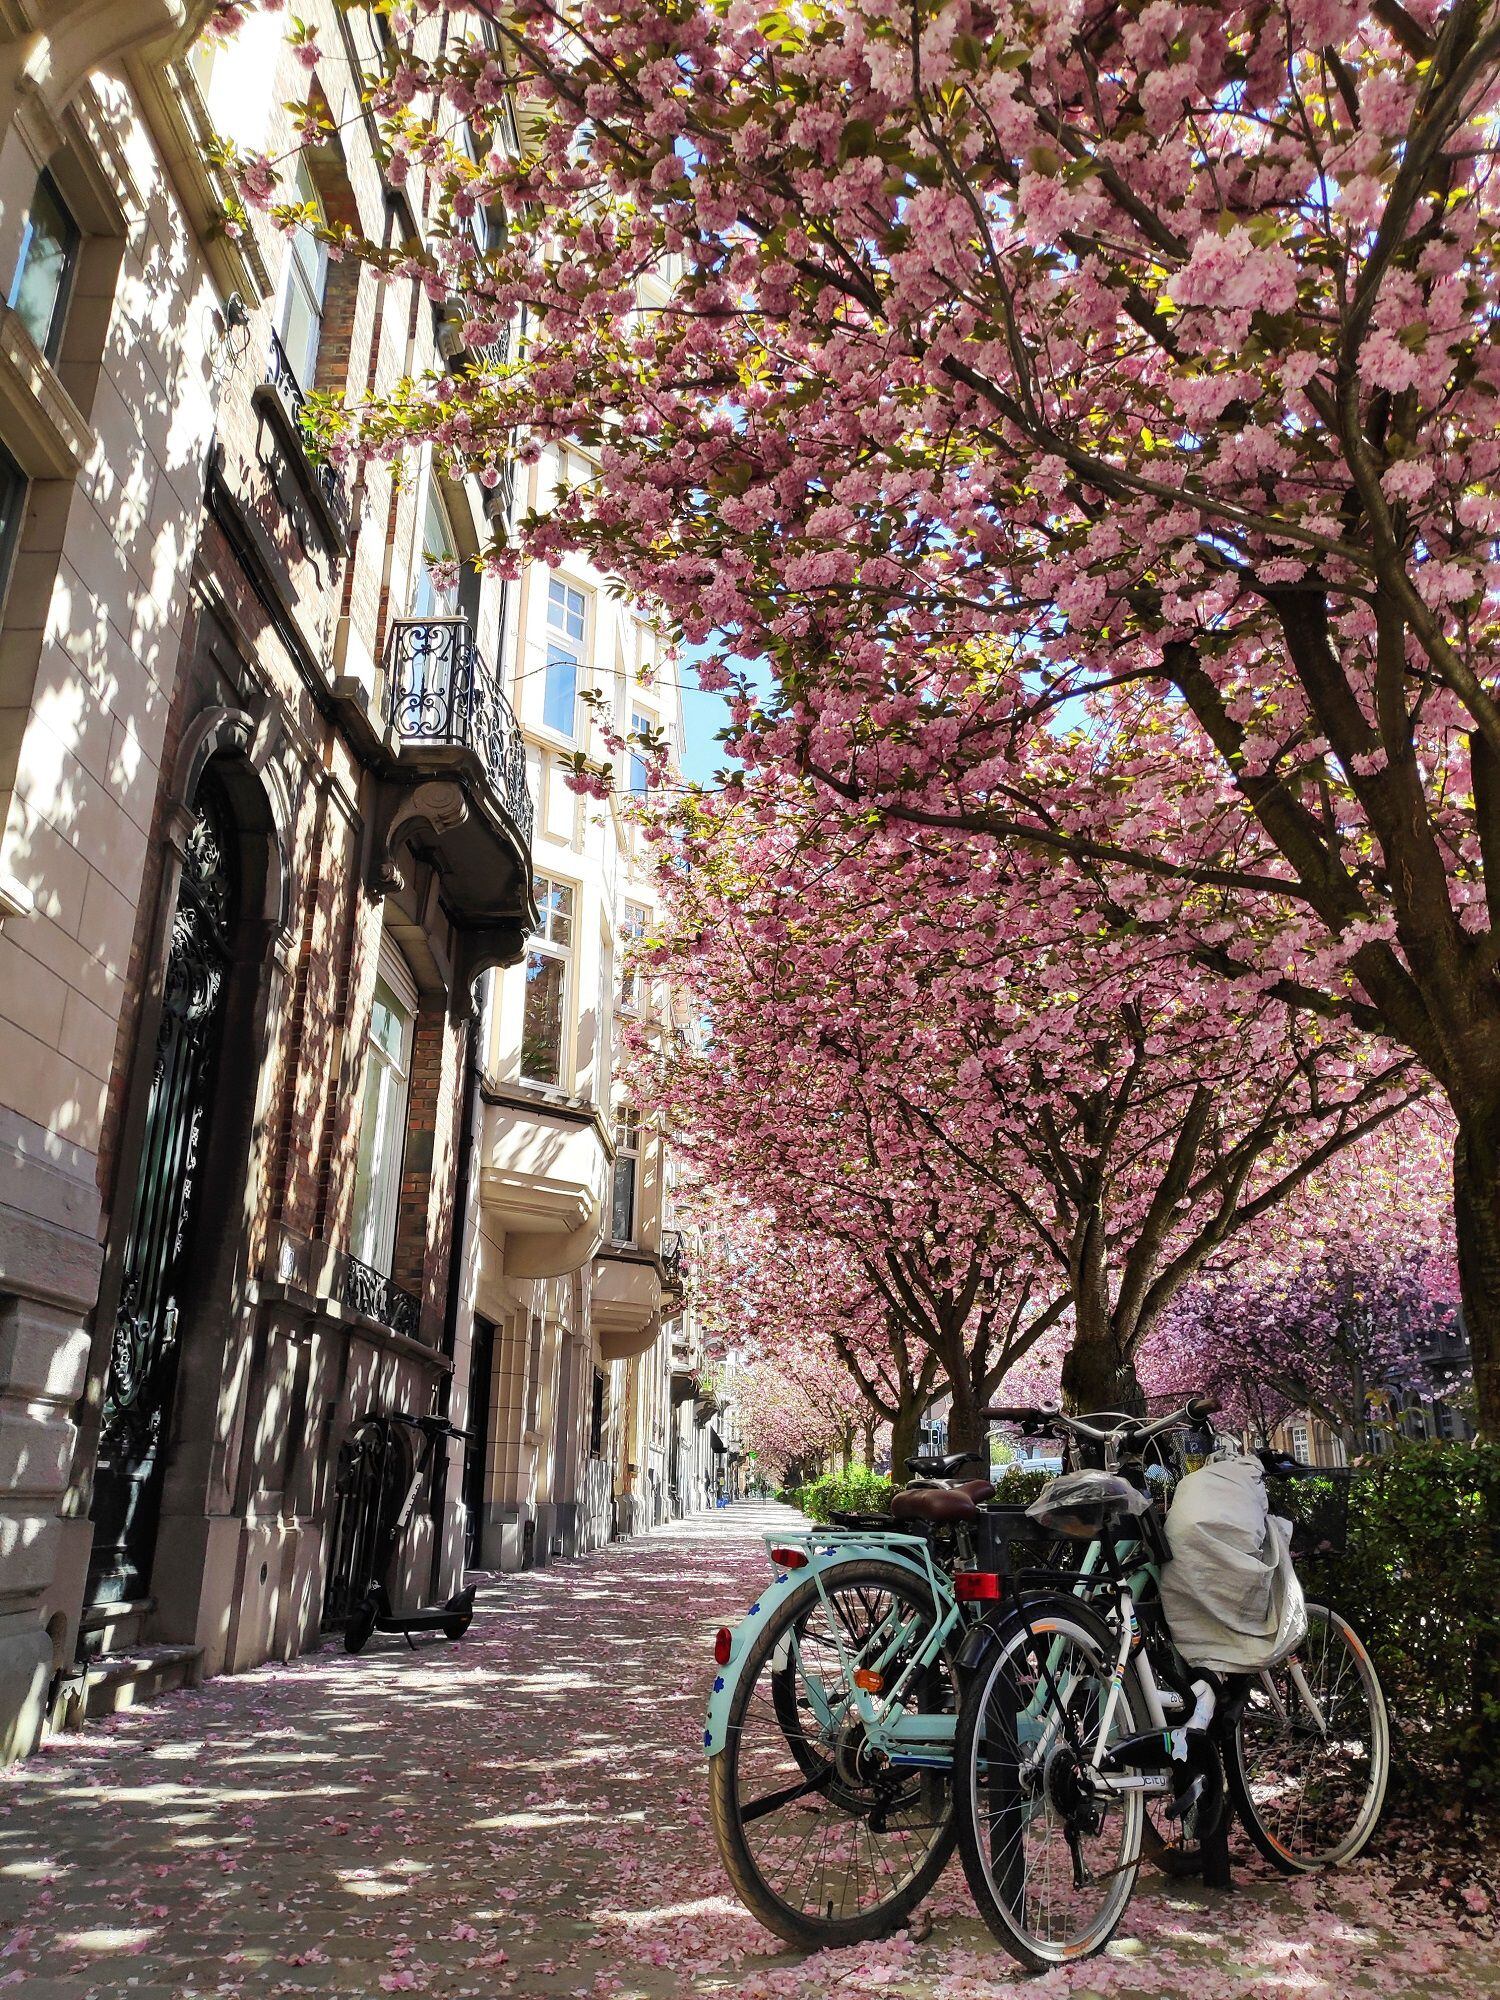 La floración de cerezos japoneses tiñe estos días de rosa muchas calles de Bruselas, como las del barrio de Schaerbeek donde nació el cantante Jacques Brel y residió el pintor René Magritte. EFE/ Javier Albisu